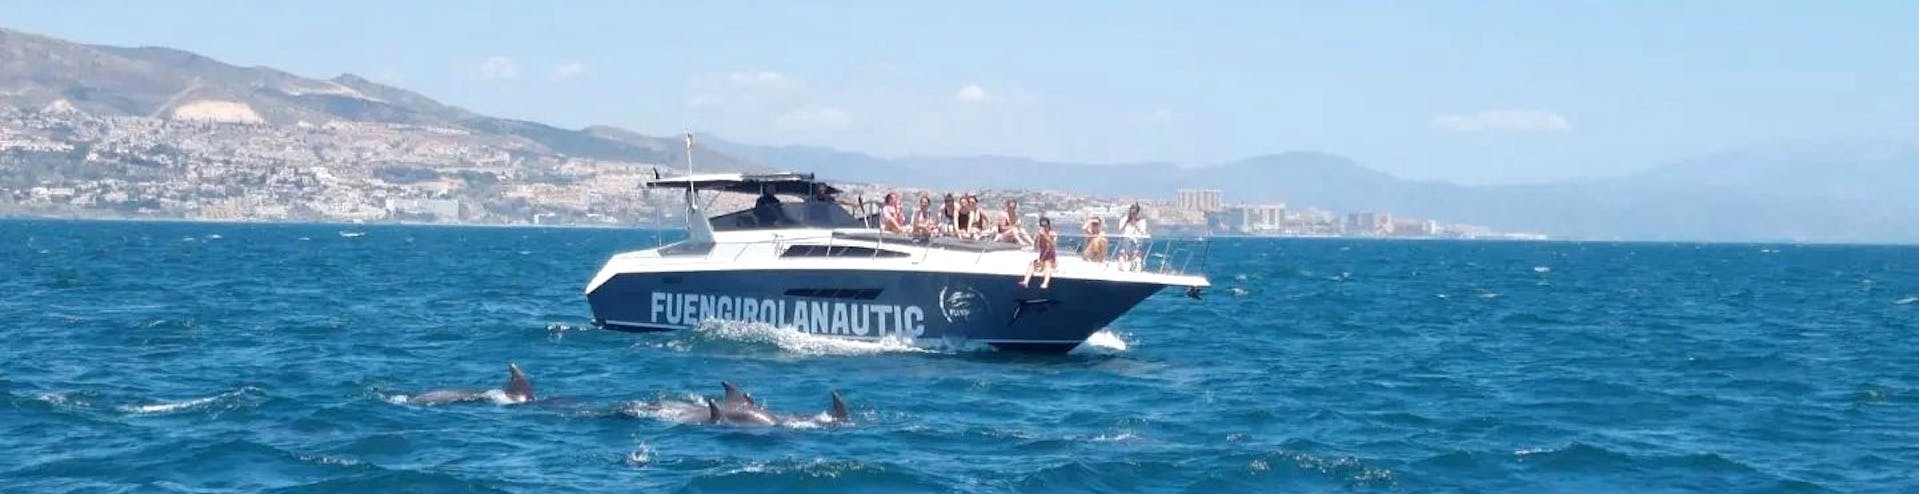 Personas observando delfines desde el barco durante una excursión semiprivada en barco desde Fuengirola con Dolphin Watching con Fuengirolanautic.